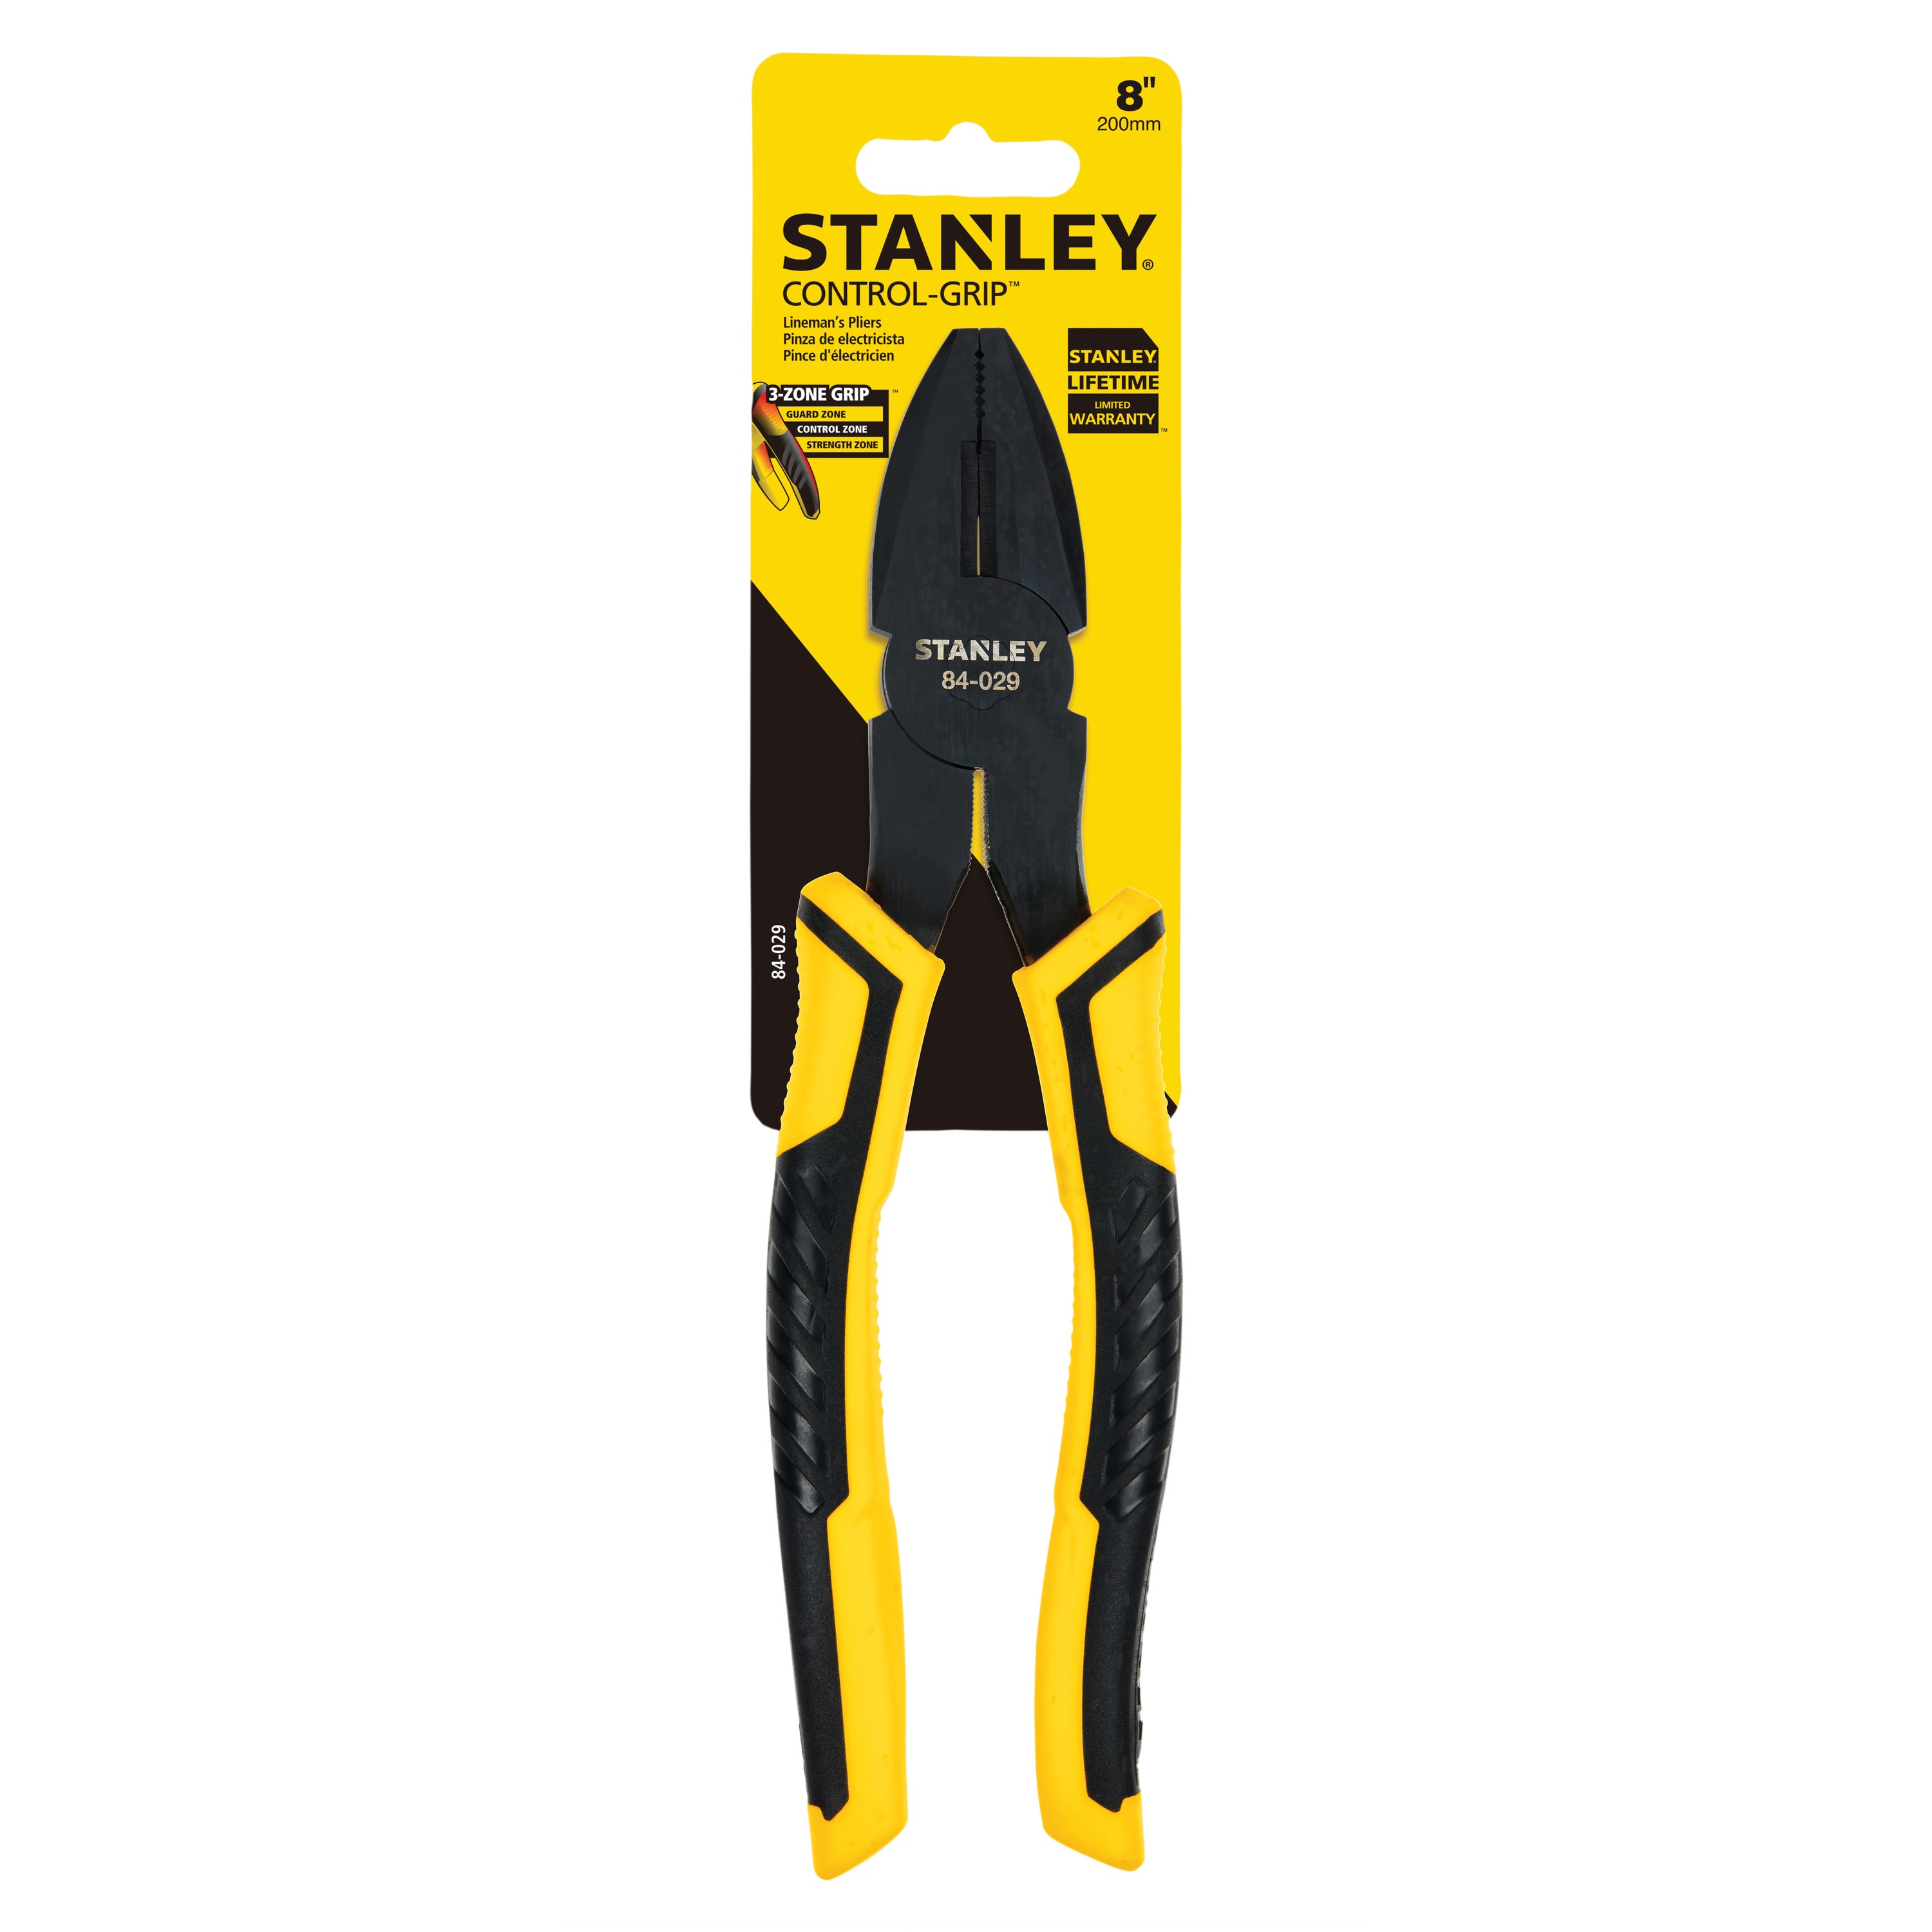 Stanley Tools - 8 in Linemans Pliers - 84-029